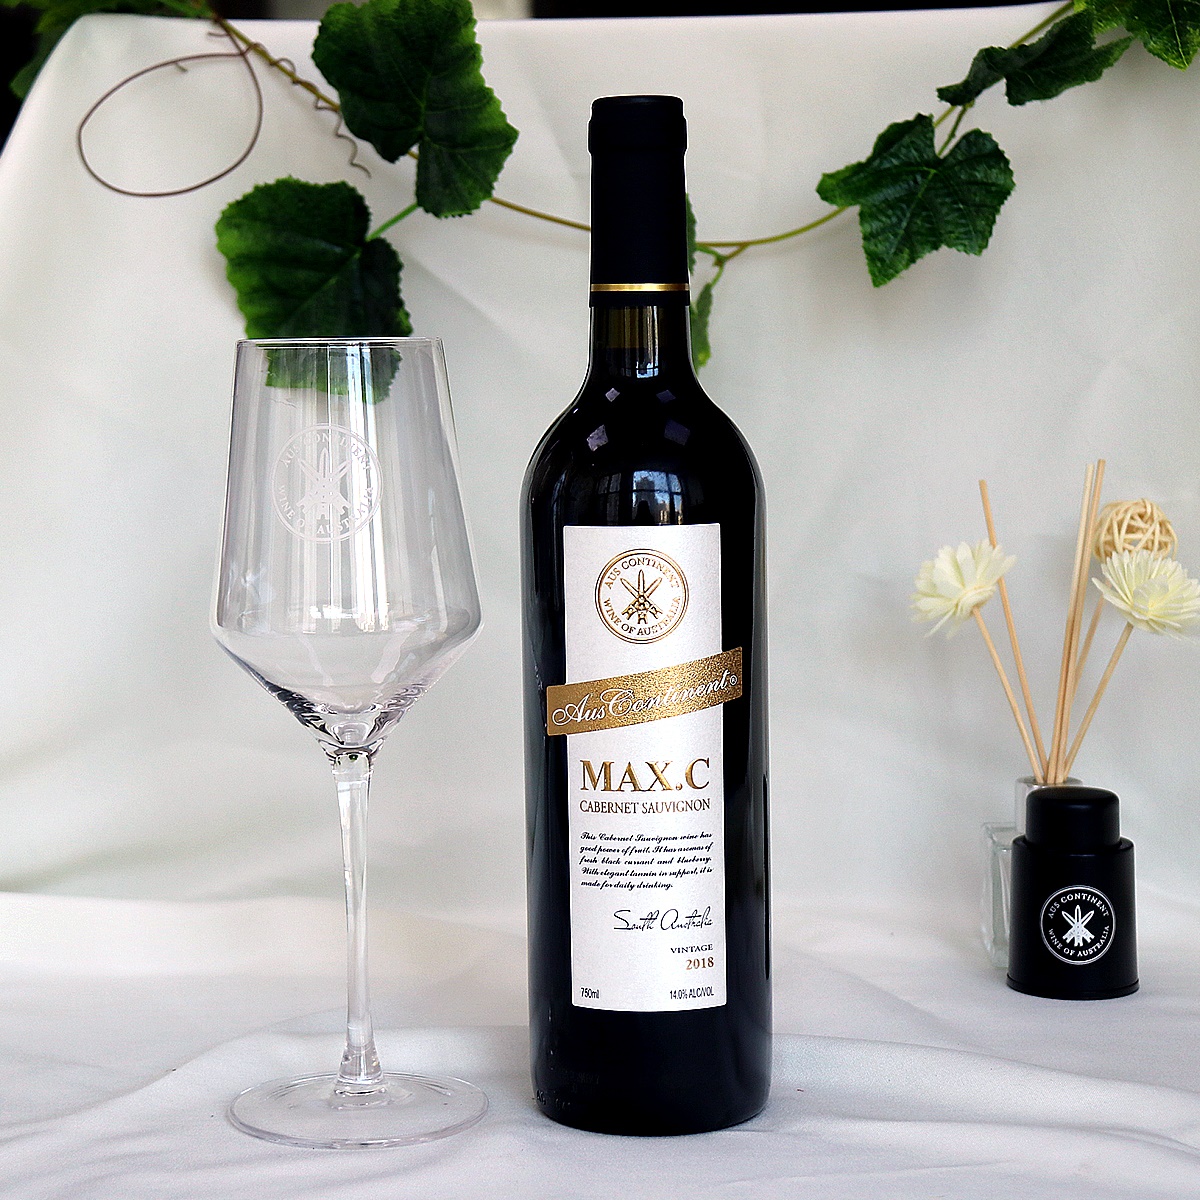 澳大利亚南澳产区澳洲大陆酒庄三把矛系列赤霞珠MAXC干红葡萄酒